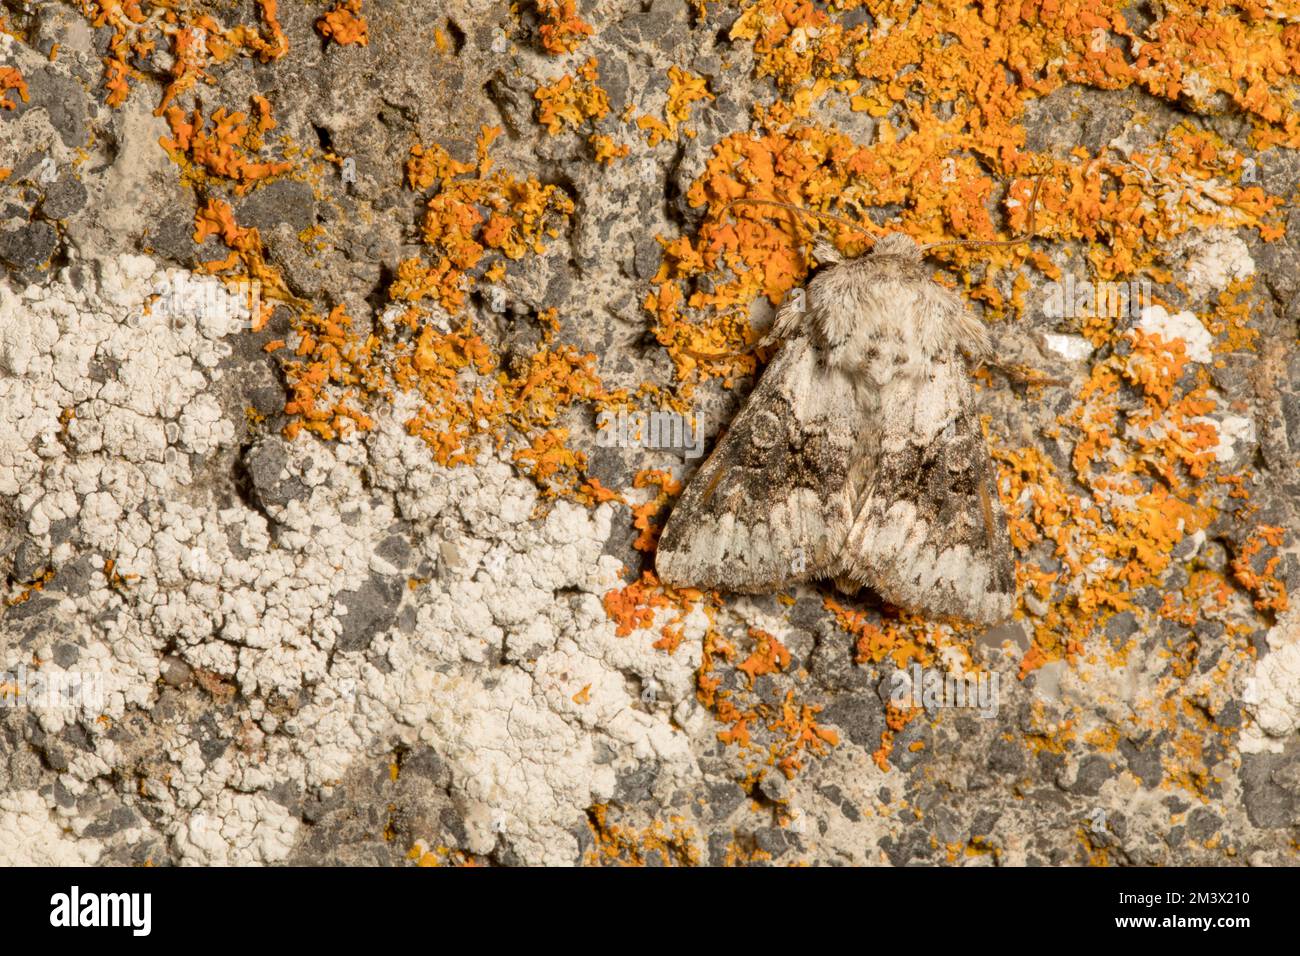 Weiße Motte (Hecatera bicolorata), die auf einer mit Flechten bedeckten Wand ruht. Powys, Wales. Juli. Stockfoto